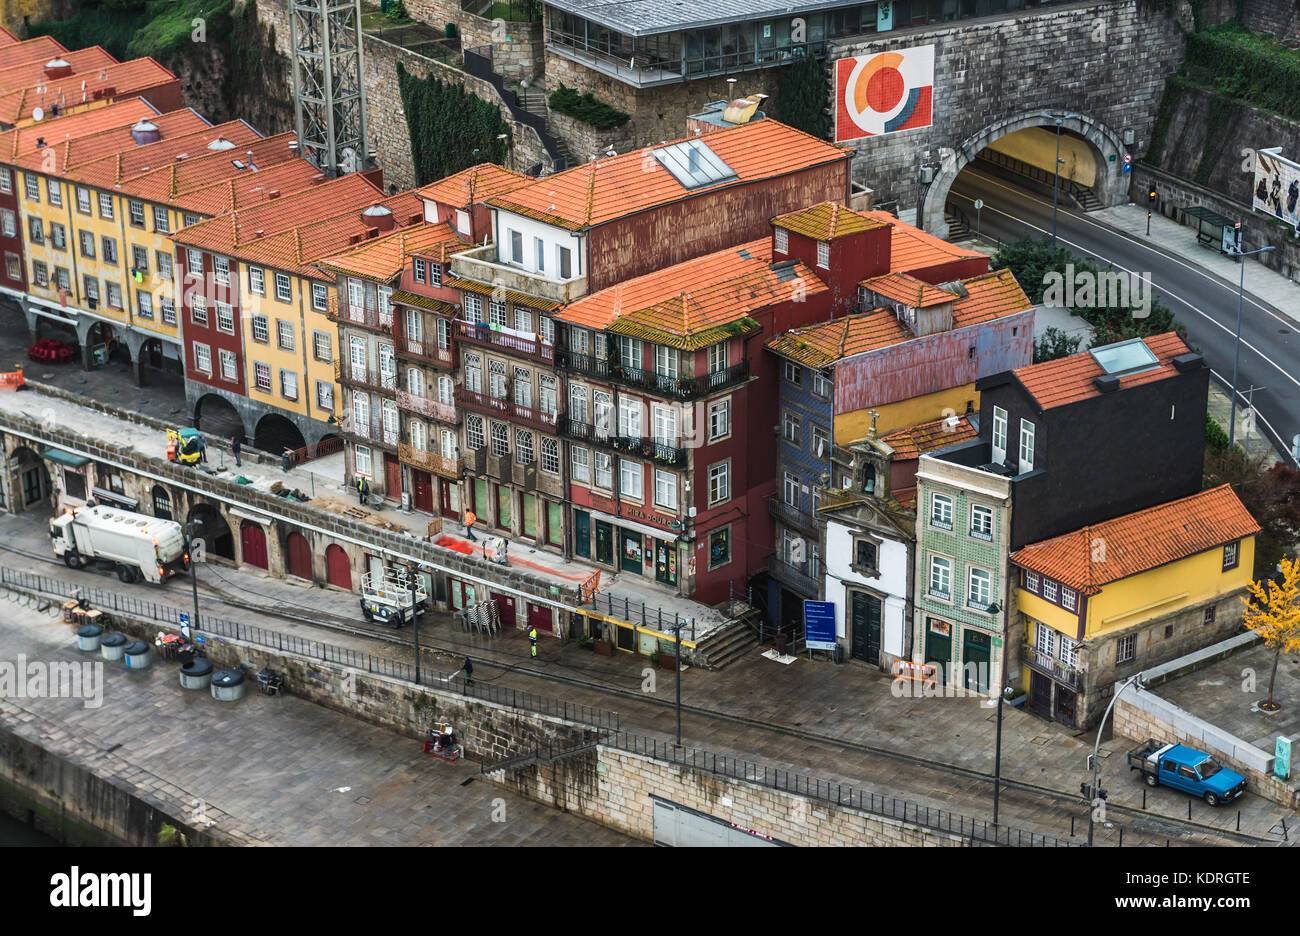 Ribeira Tunel e le case nella città di Porto sulla penisola iberica, la seconda città più grande del Portogallo Foto Stock